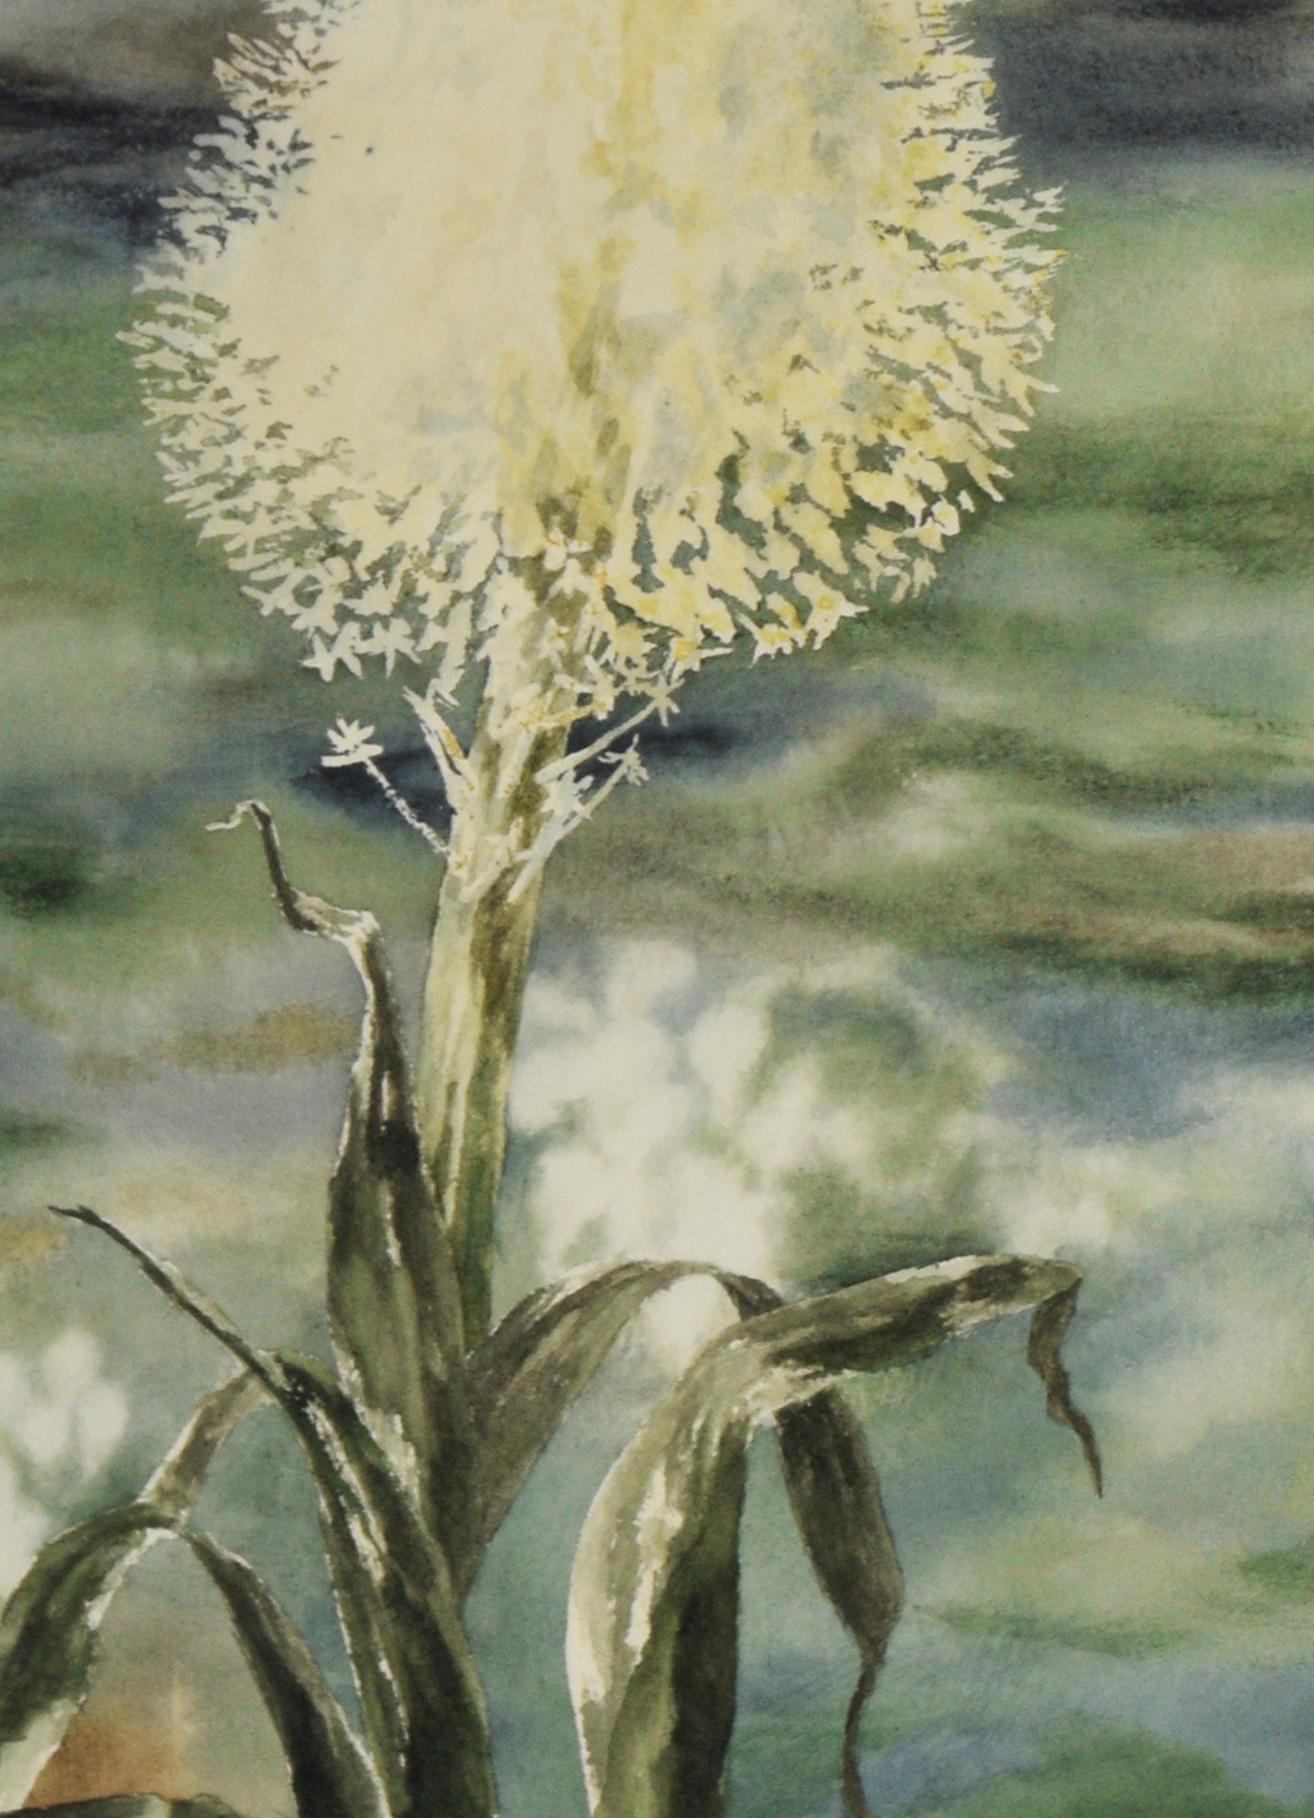 Beargrass - Aquarelle originale sur papier

Aquarelle originale représentant le beargrass, également connu sous le nom de horse tail, par Marie Yunker (Américaine, C.I.C.). Les teintes de vert et de bleu constituent l'arrière-plan, tandis que la